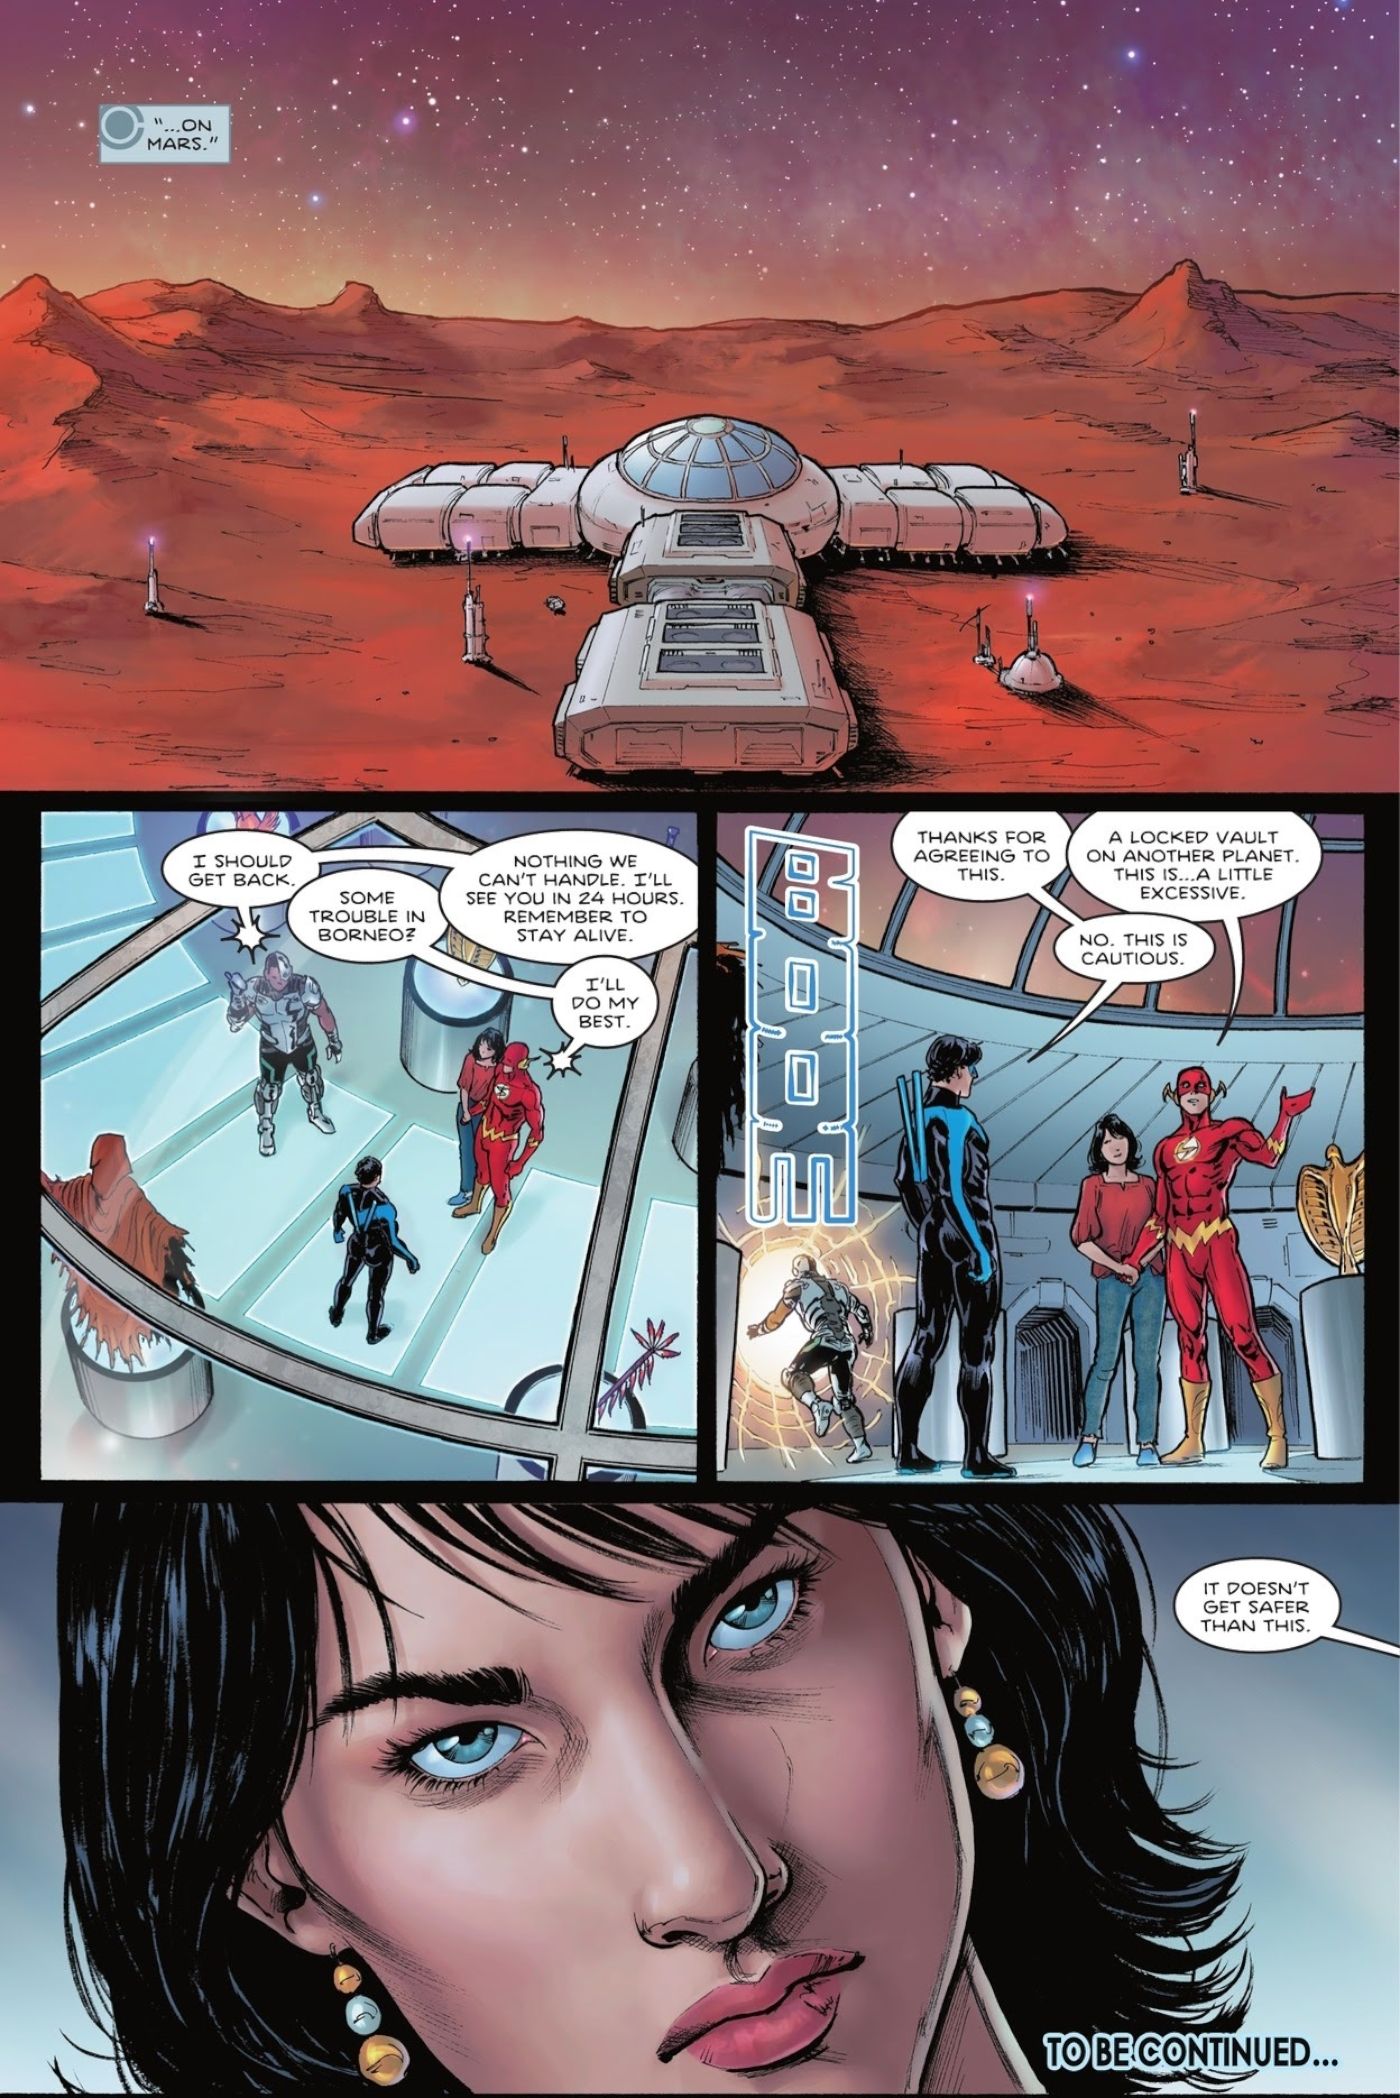 Wally ist zusammen mit seiner Frau auf der Marsbasis der Titans eingesperrt, bis das Team seinen zukünftigen Mord aufklären kann